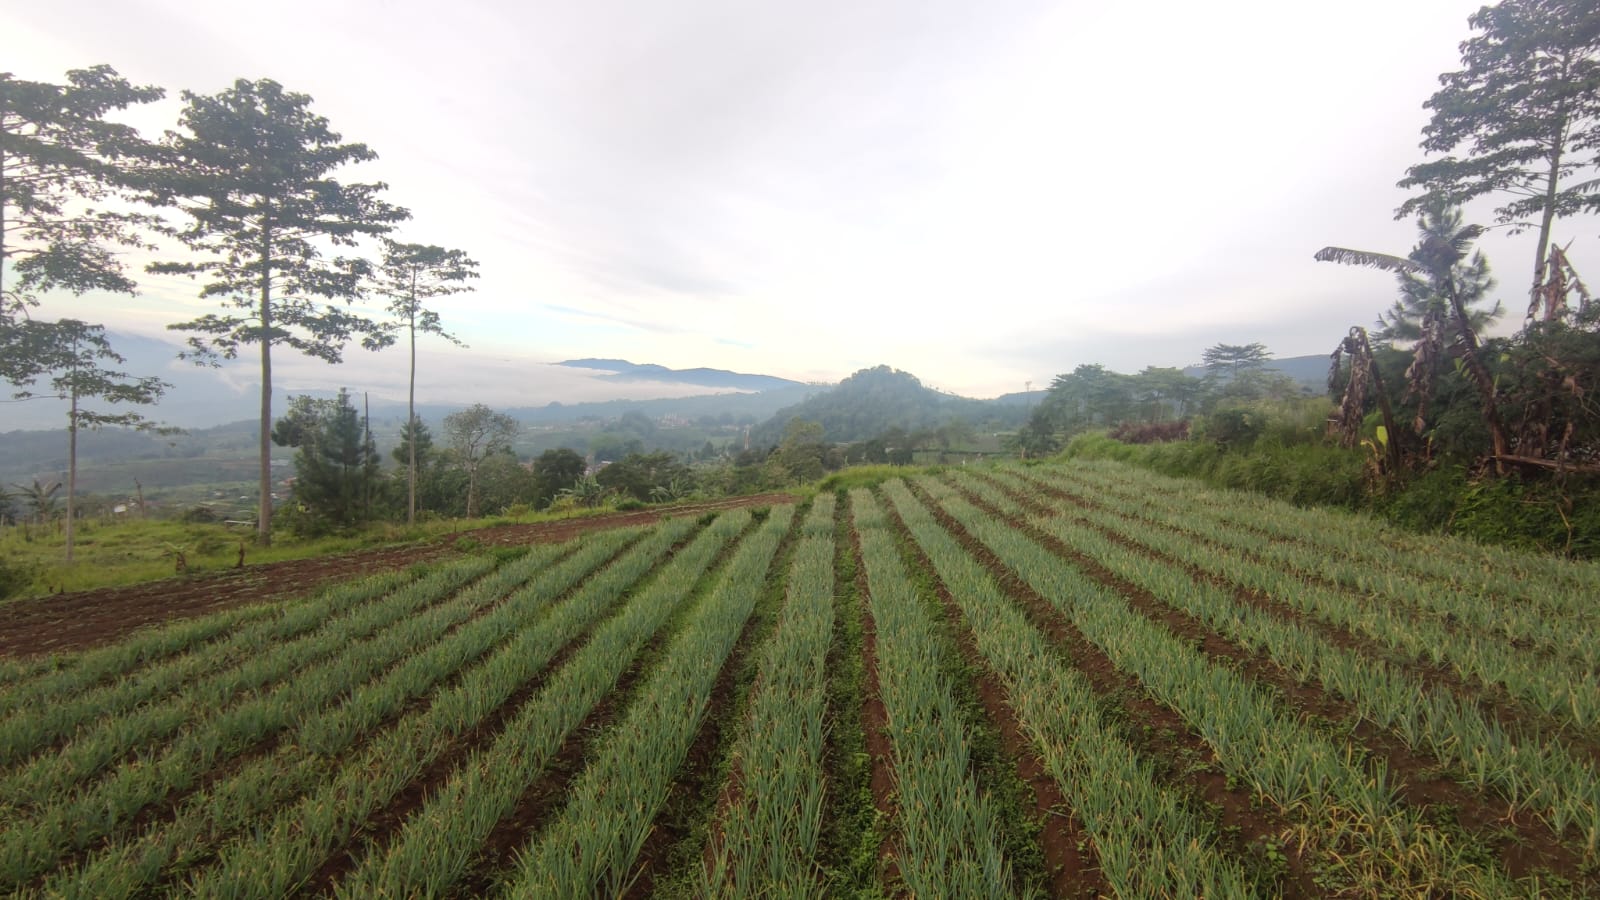 Daftar Daerah Paling Dingin di Jawa Barat, Bukan Kuningan Loh, Suhu Bisa 9 Derajat Celcius